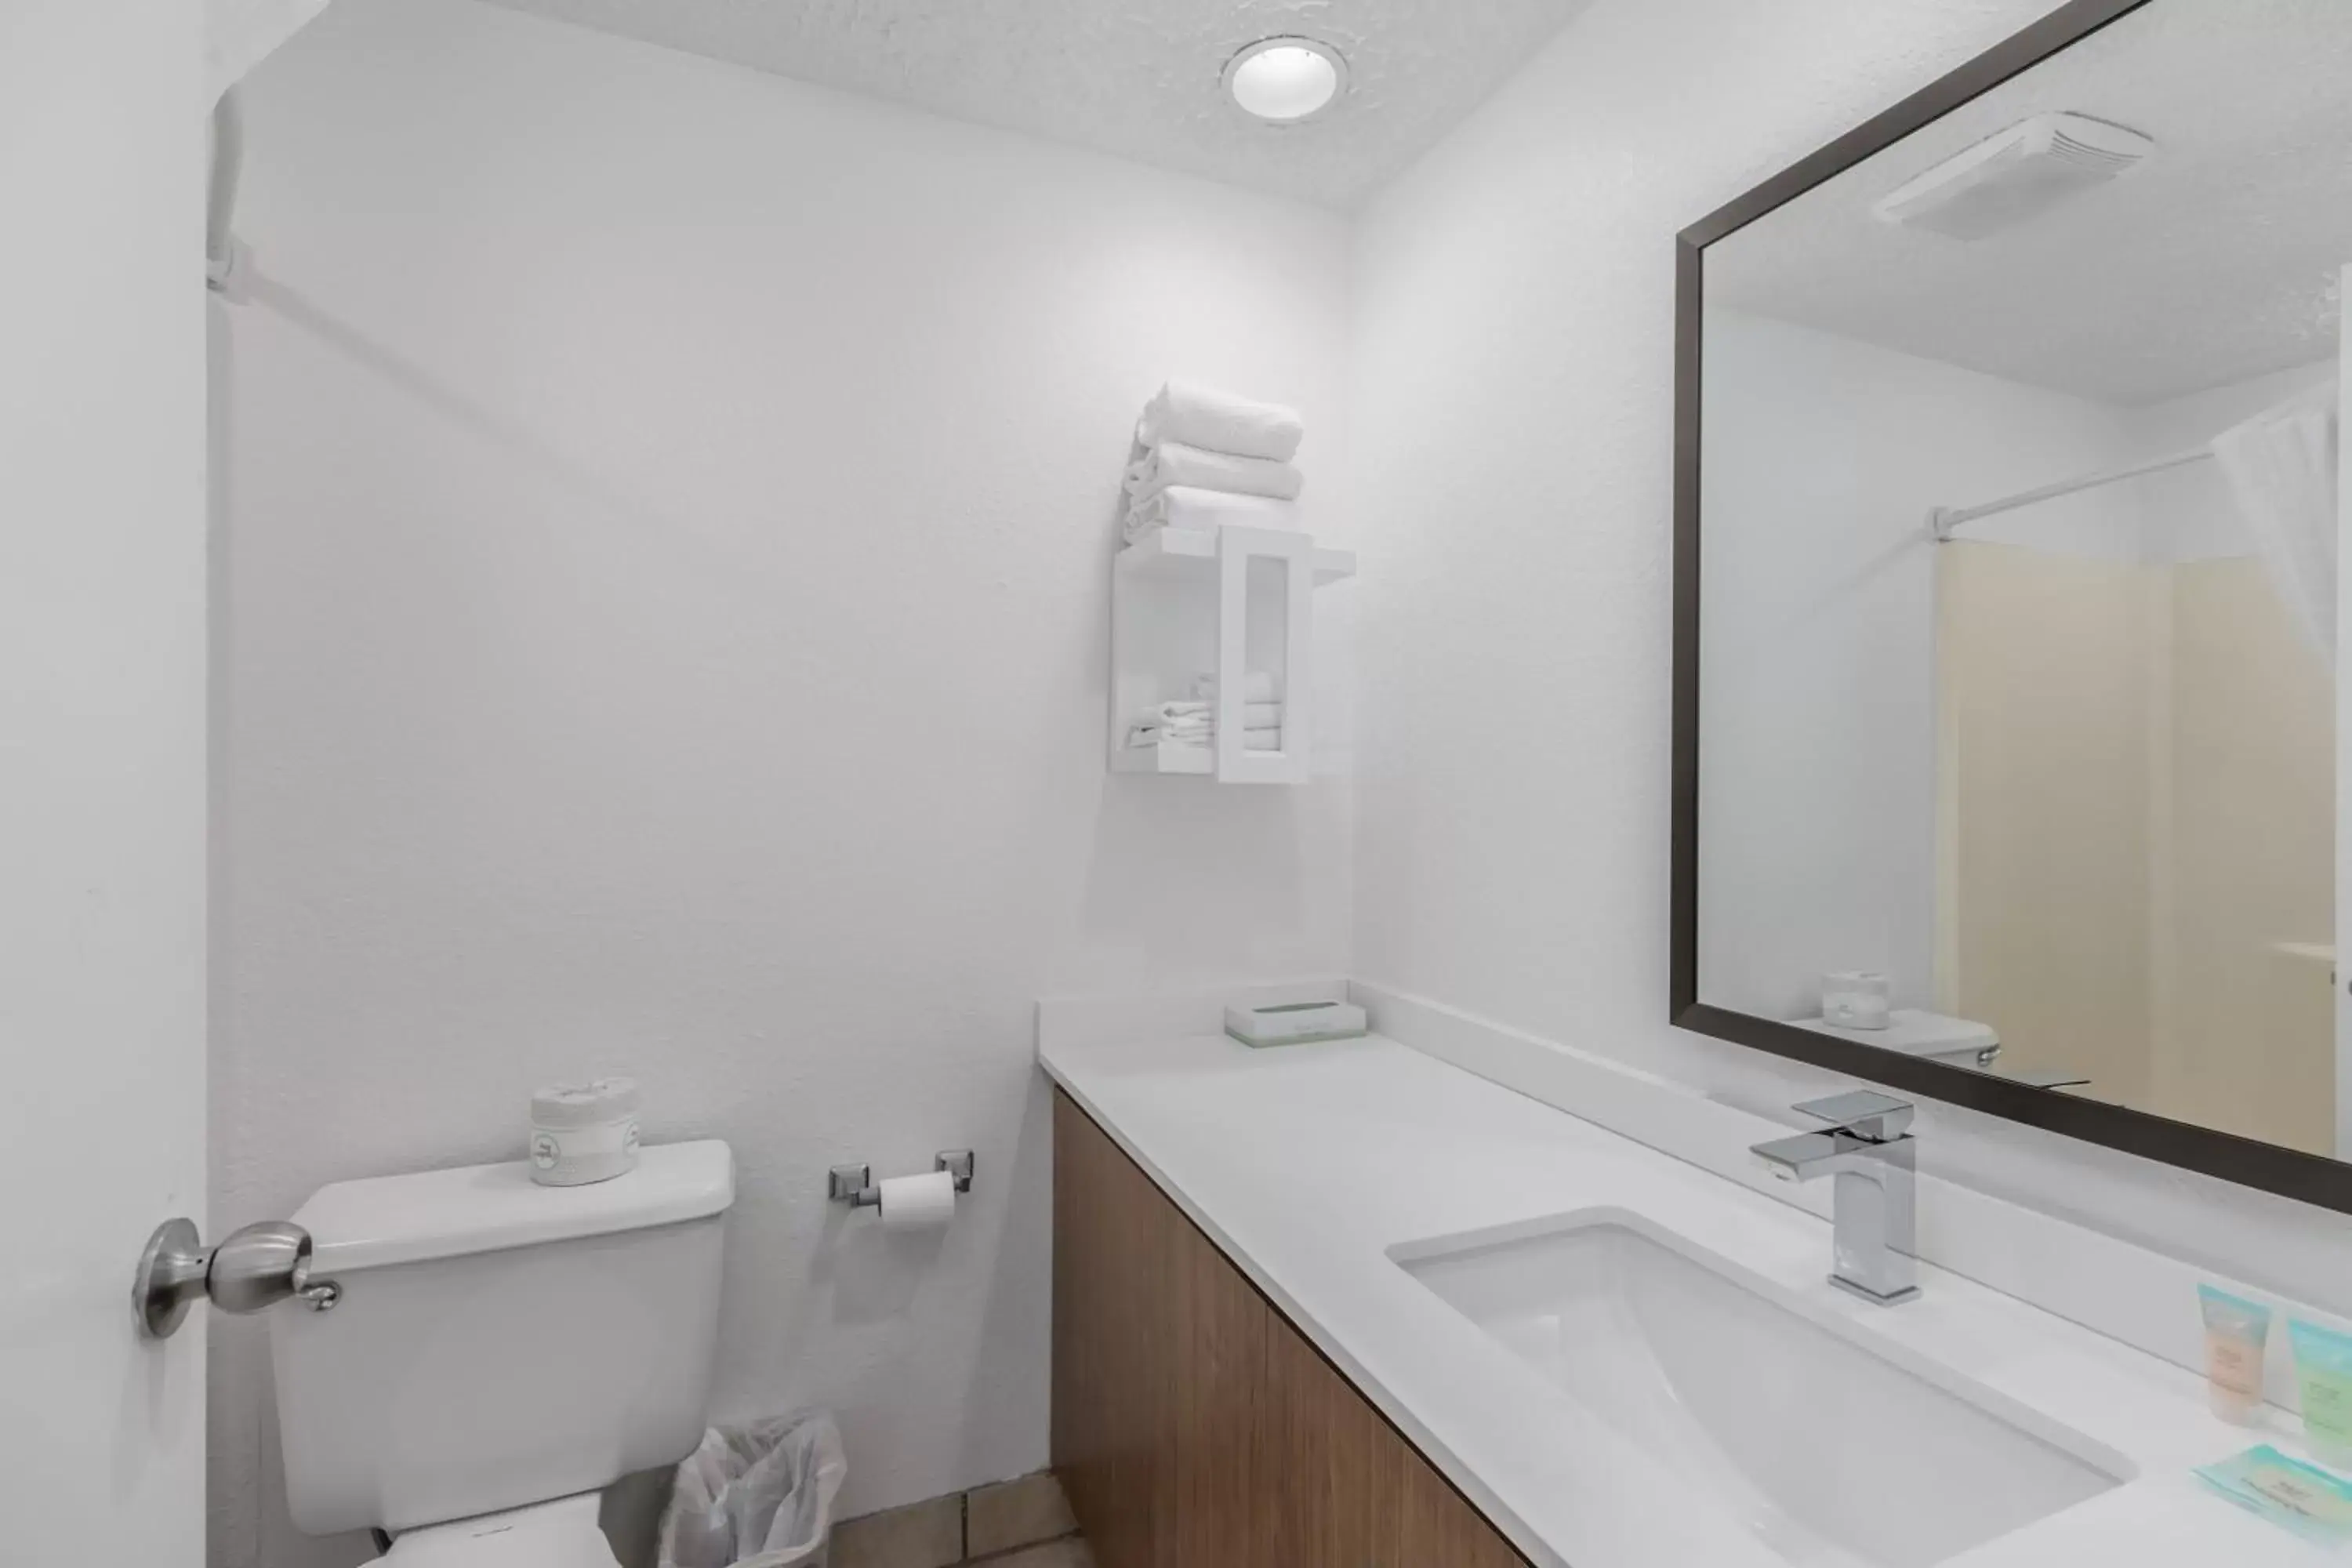 Bathroom in Crossroads Inn & Suites